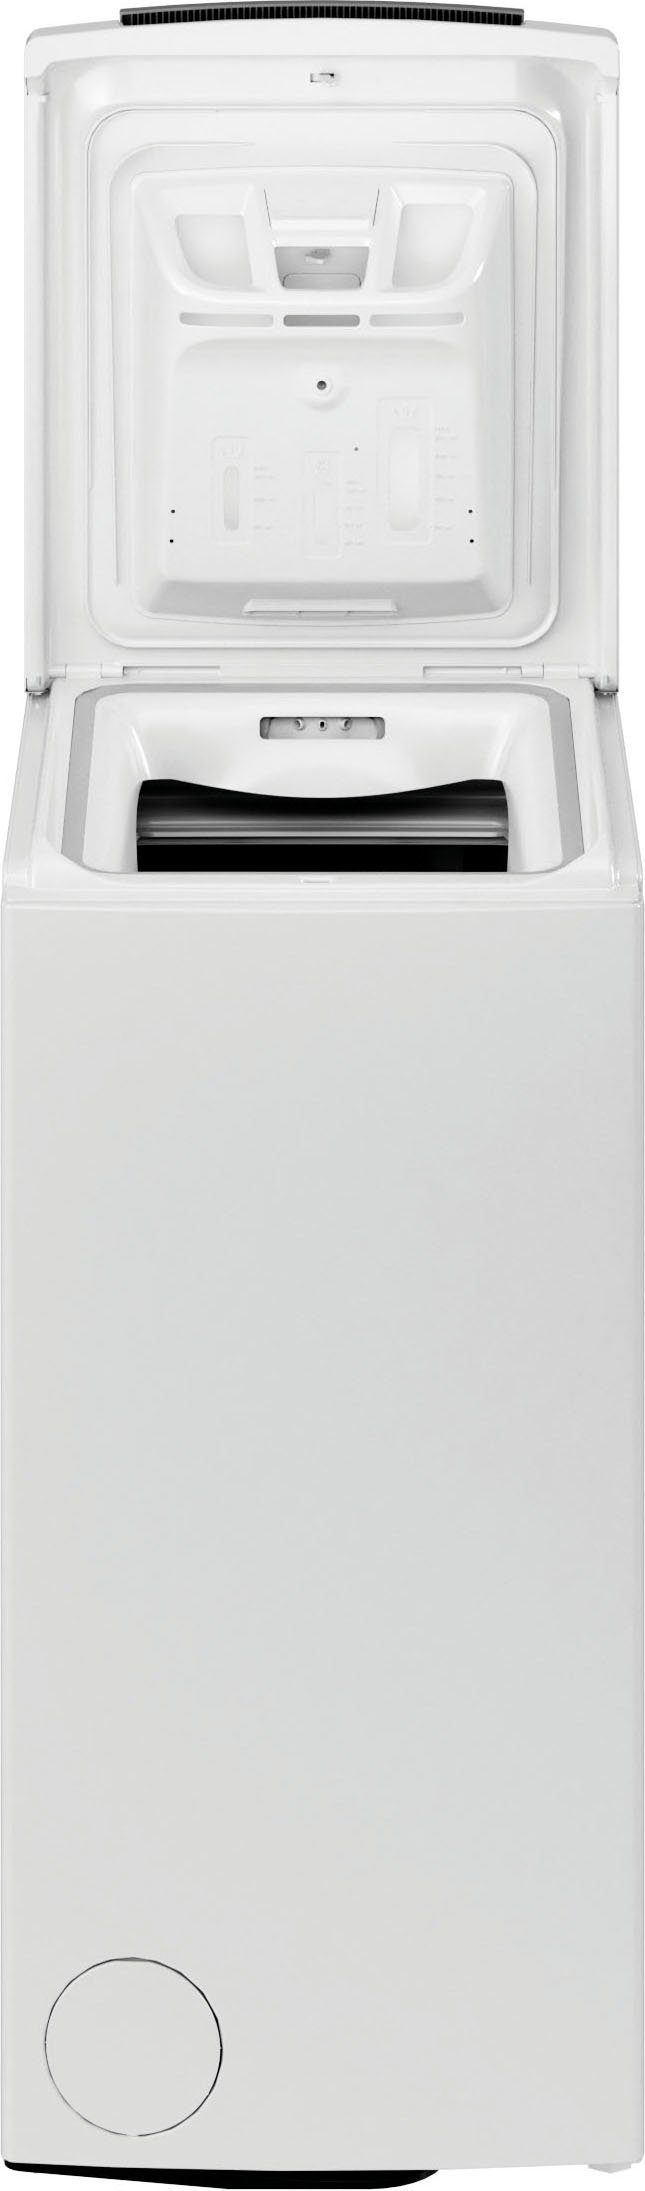 BAUKNECHT Waschmaschine Toplader WMT B5, 6 U/min 1200 6513 kg